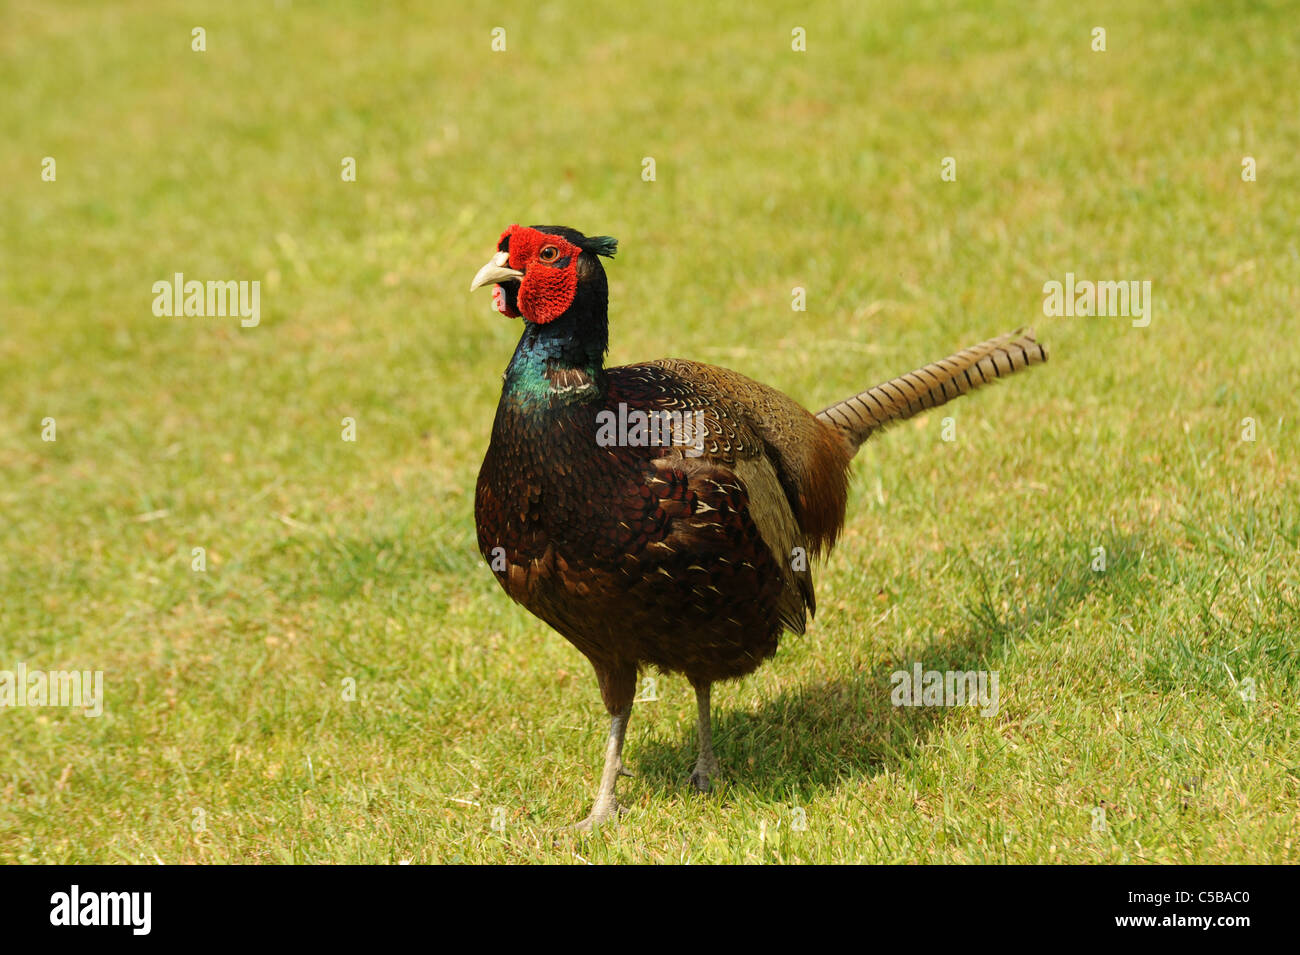 Pheasant on grass Stock Photo